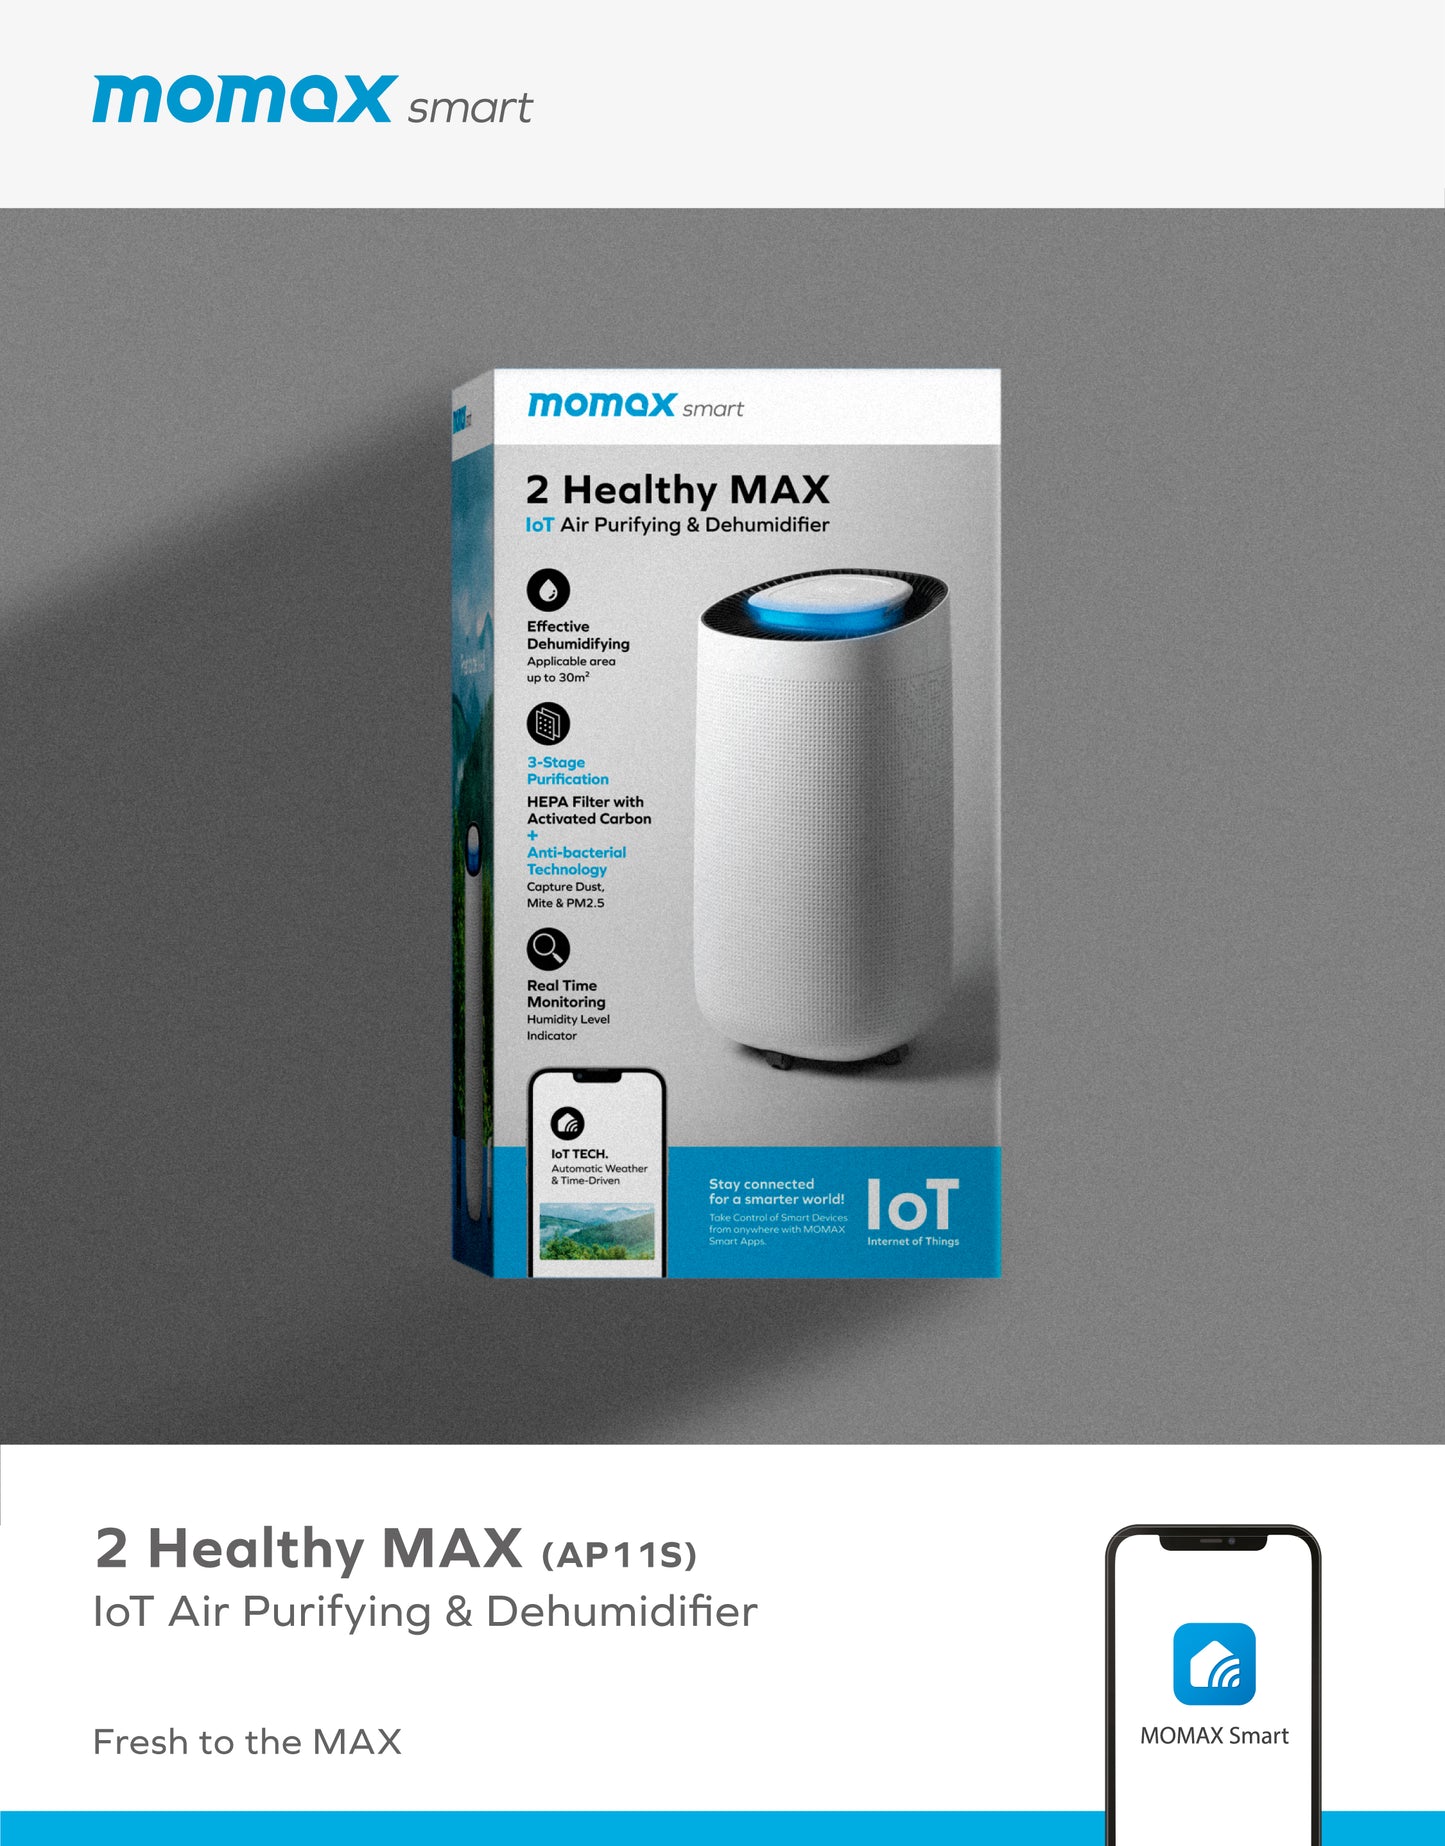 2 Healthy MAX IoT Air Purifying Dehumidifier (AP11S) -- Dehumidifier